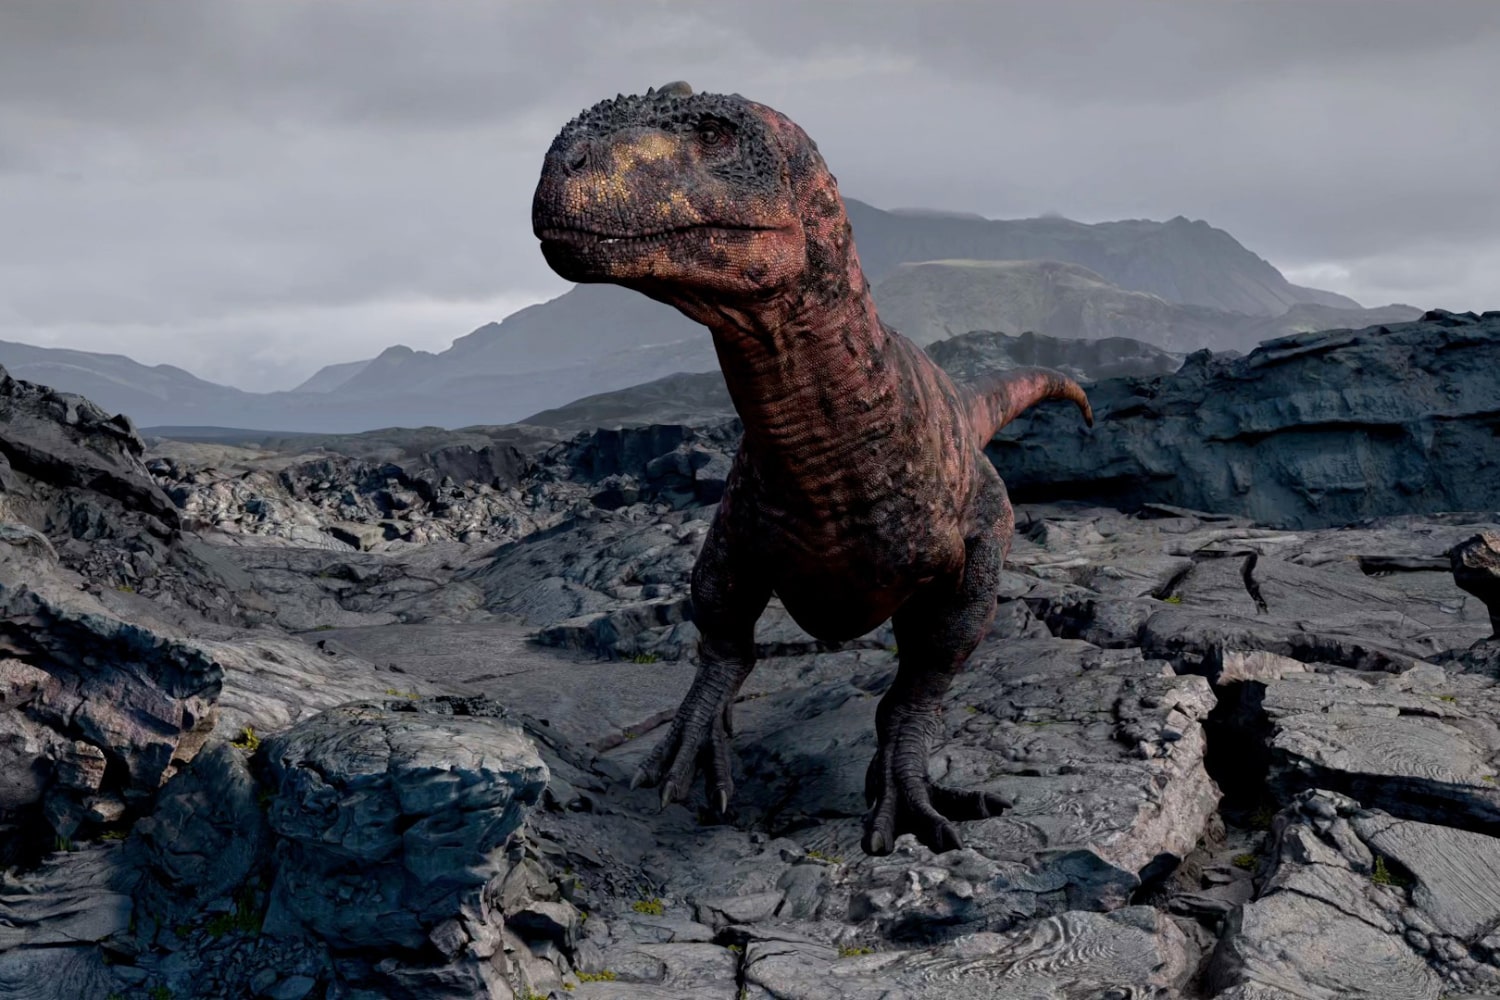 یک دایناسور واقعیت مجازی با استفاده از برنامه Encounter Dinosaurs در هدست اپل ویژن پرو به تصویر کشیده شده است.